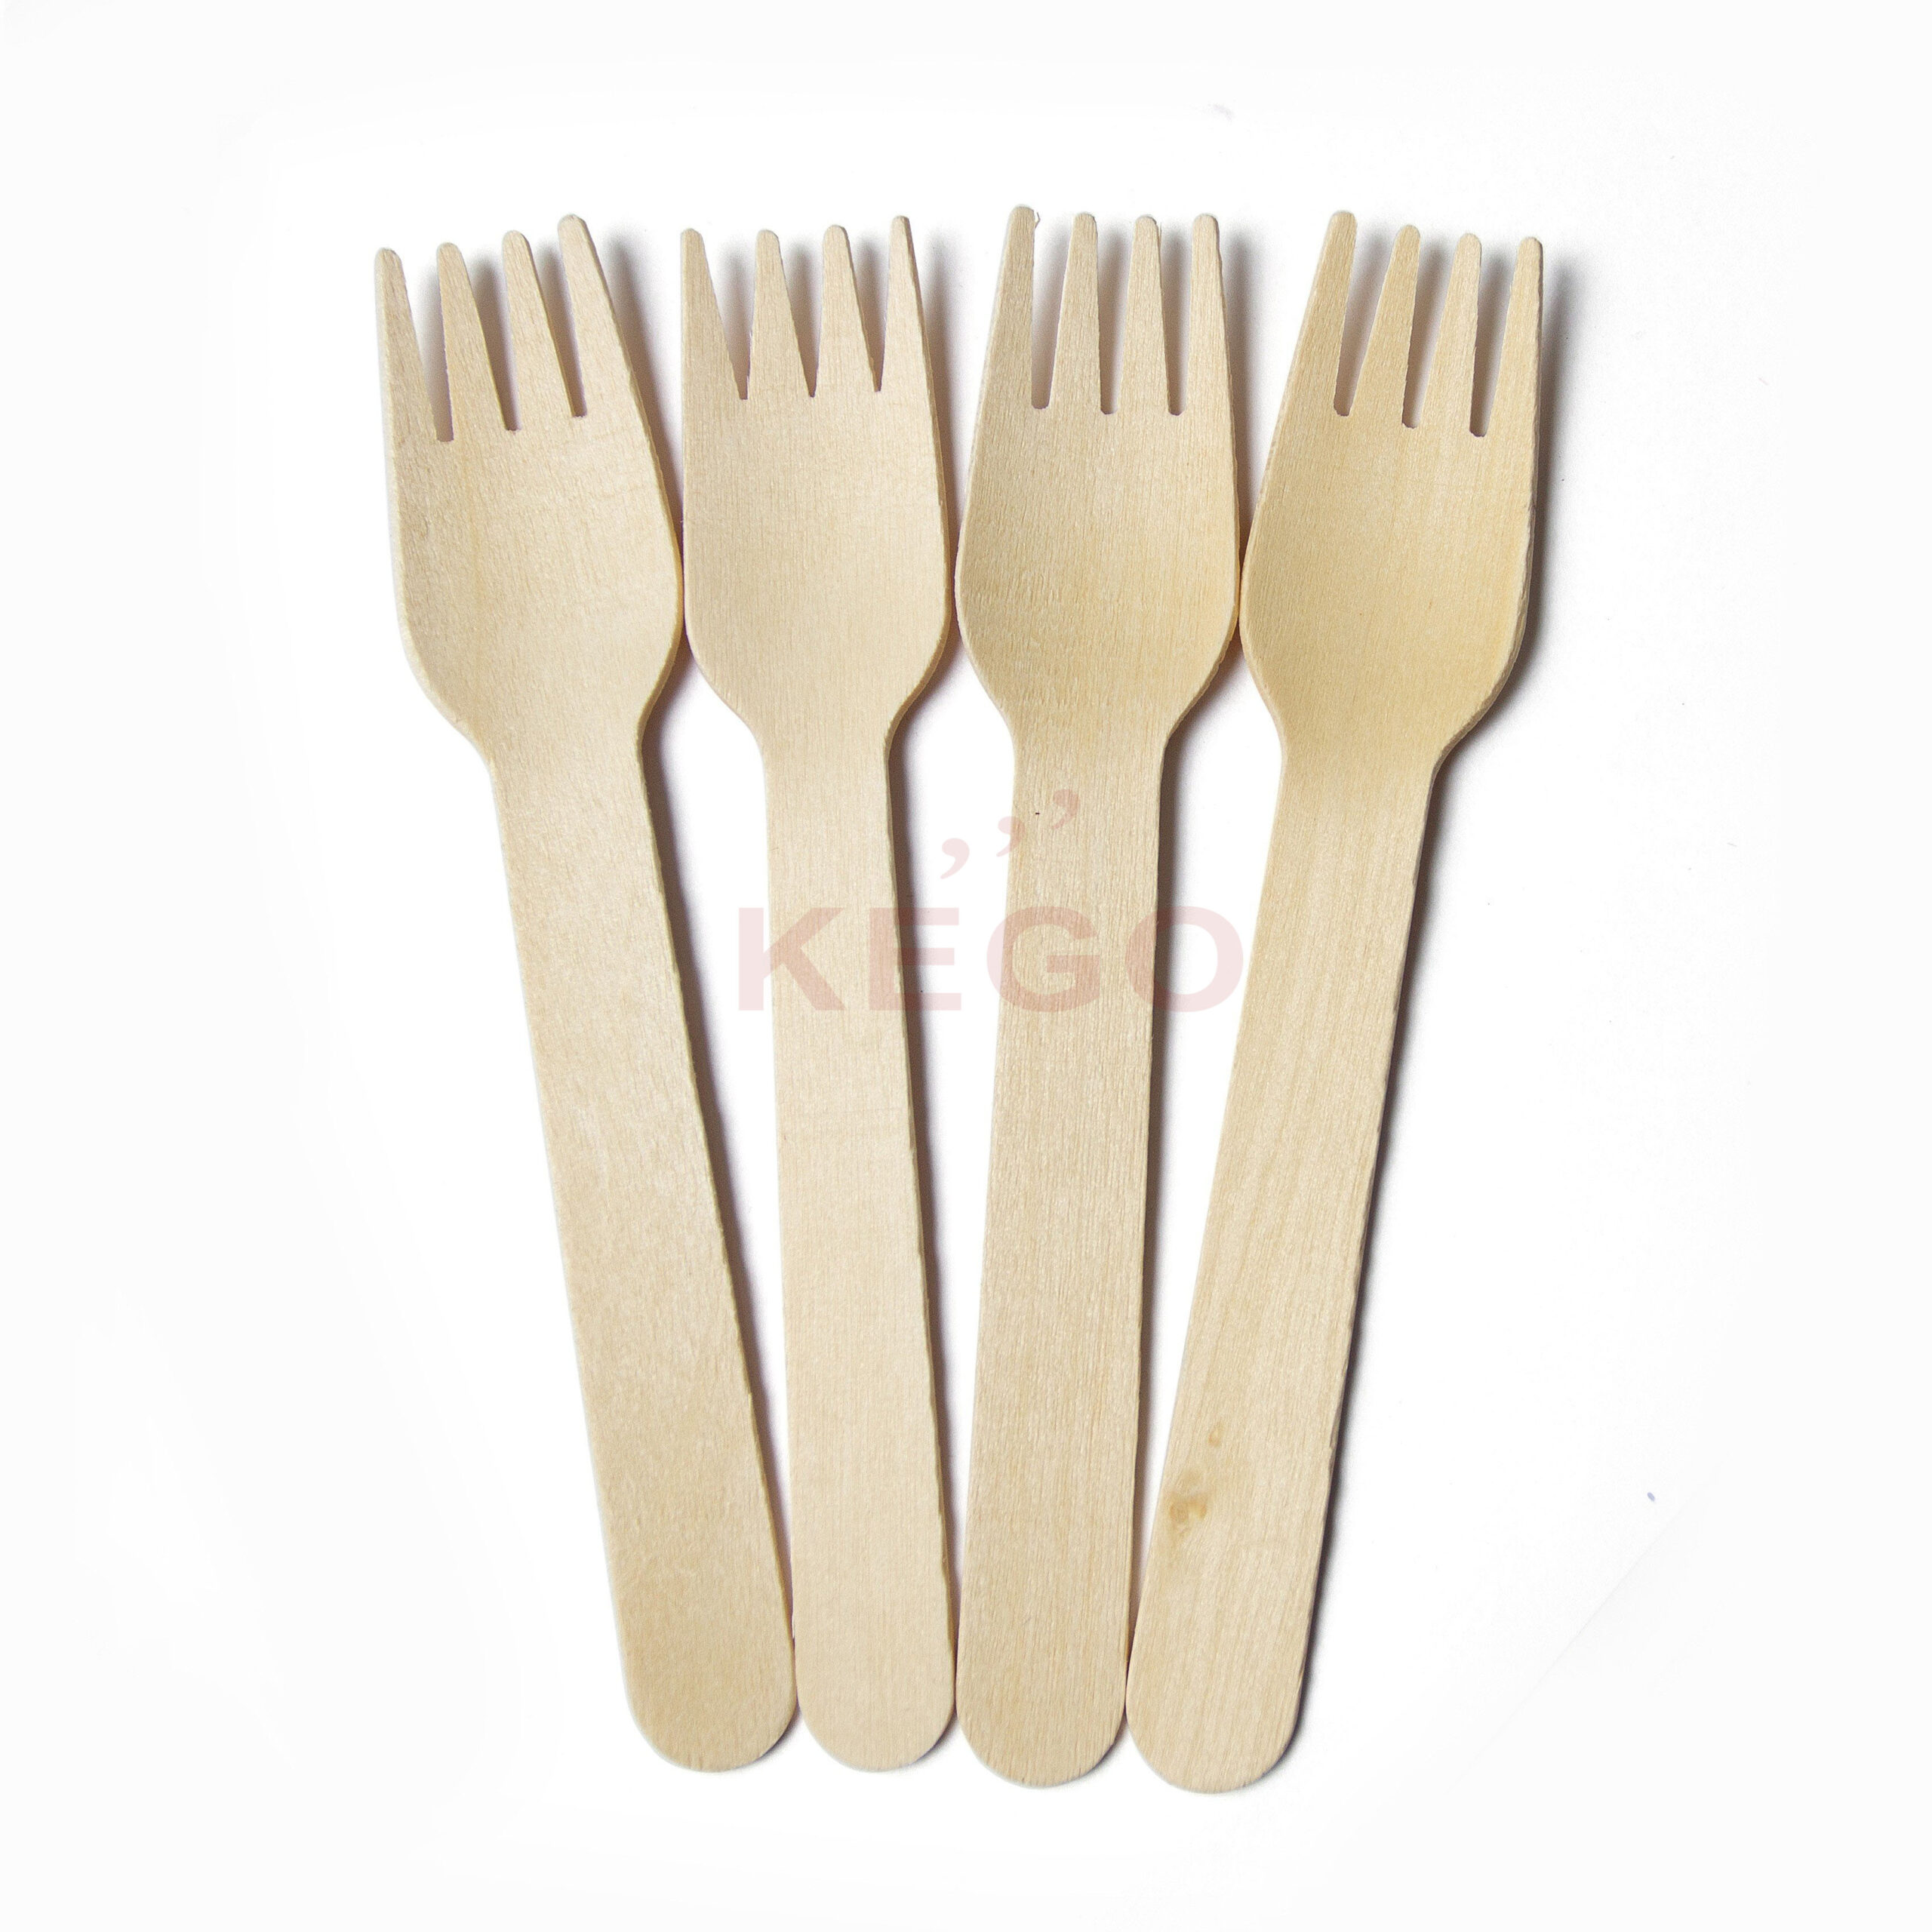 https://kego.vn/wp-content/uploads/2015/09/Disposable-Wooden-Fork-160-3-scaled.jpg